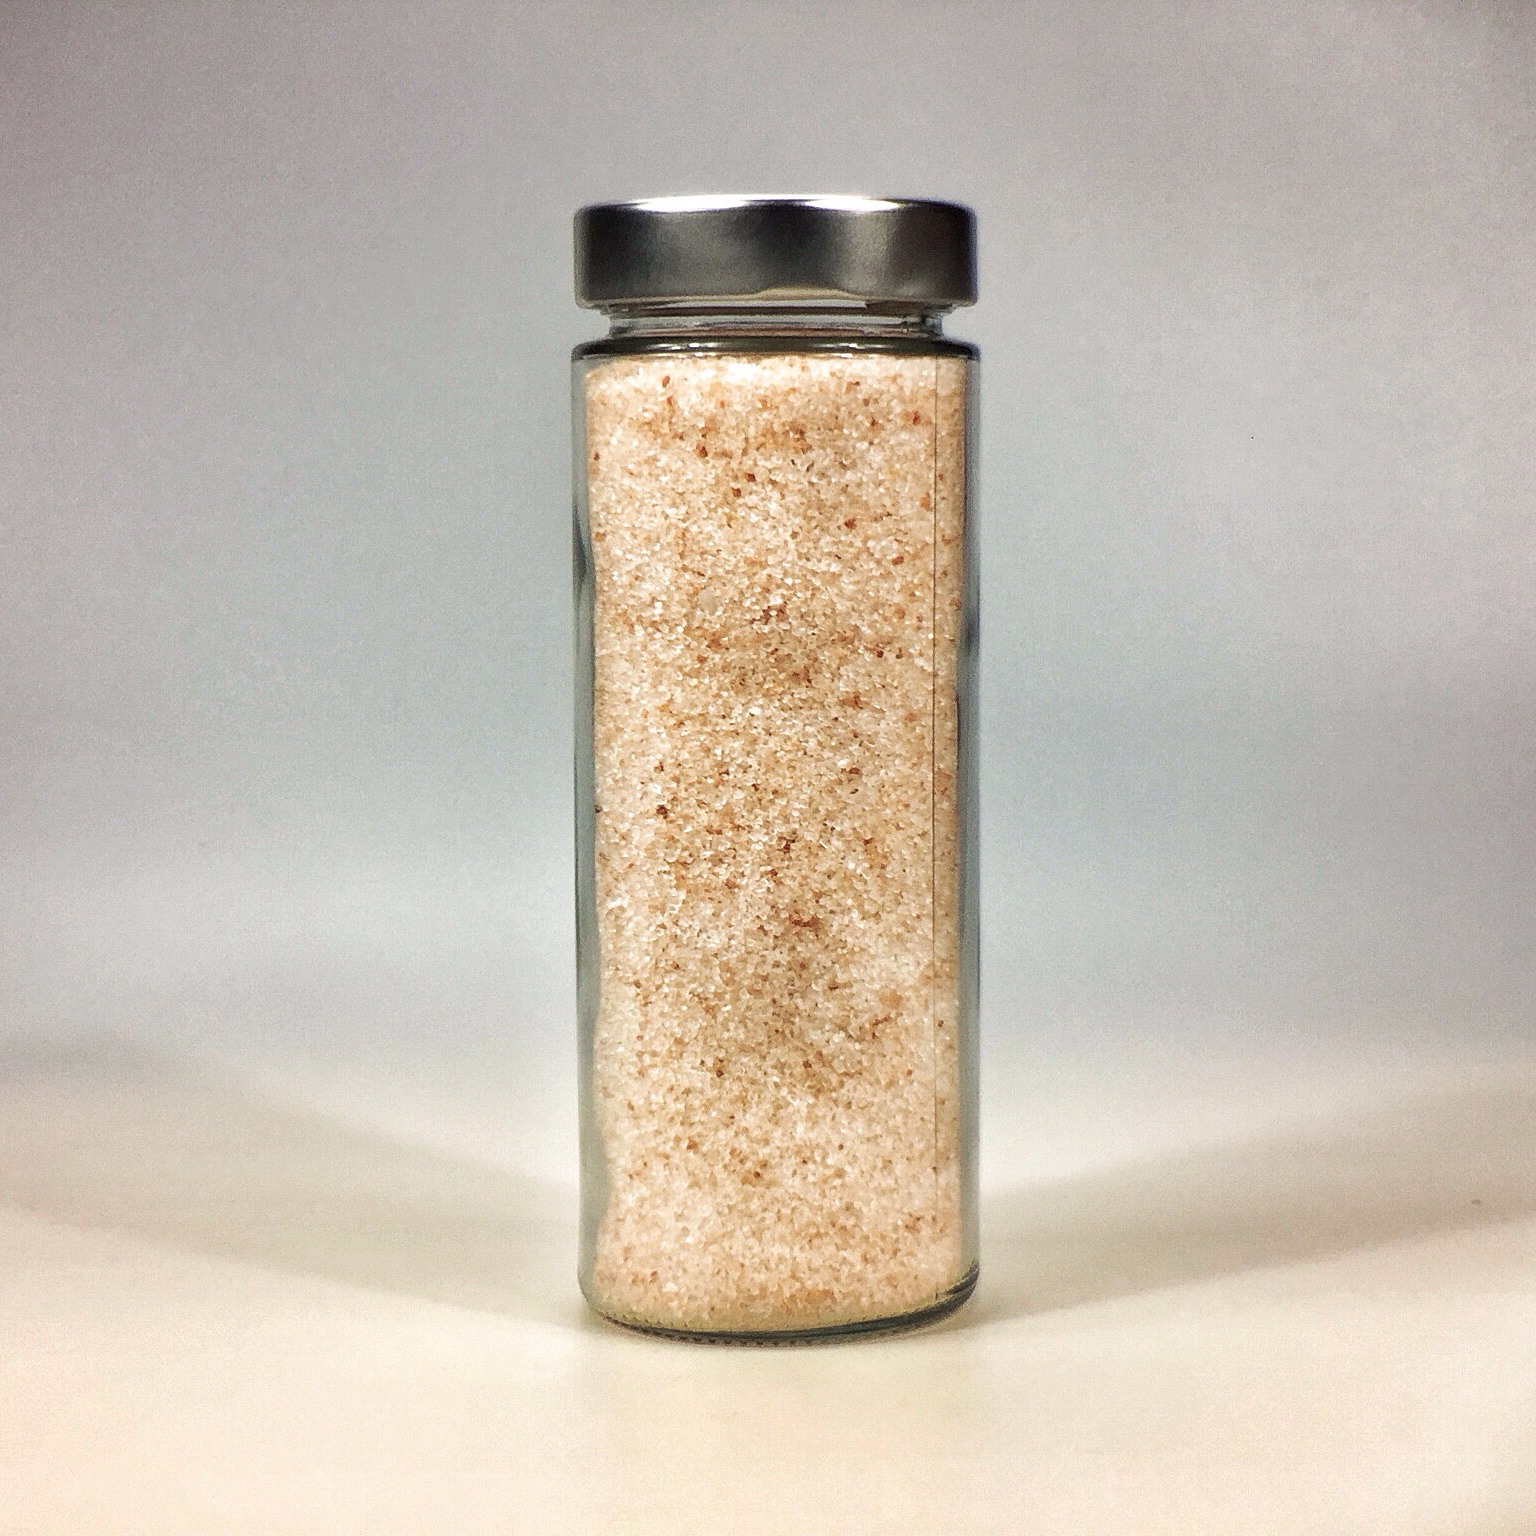 Himalaya Salz körnig gemahlen für Salzstreuer im grossen Glas mit Silberdeckel